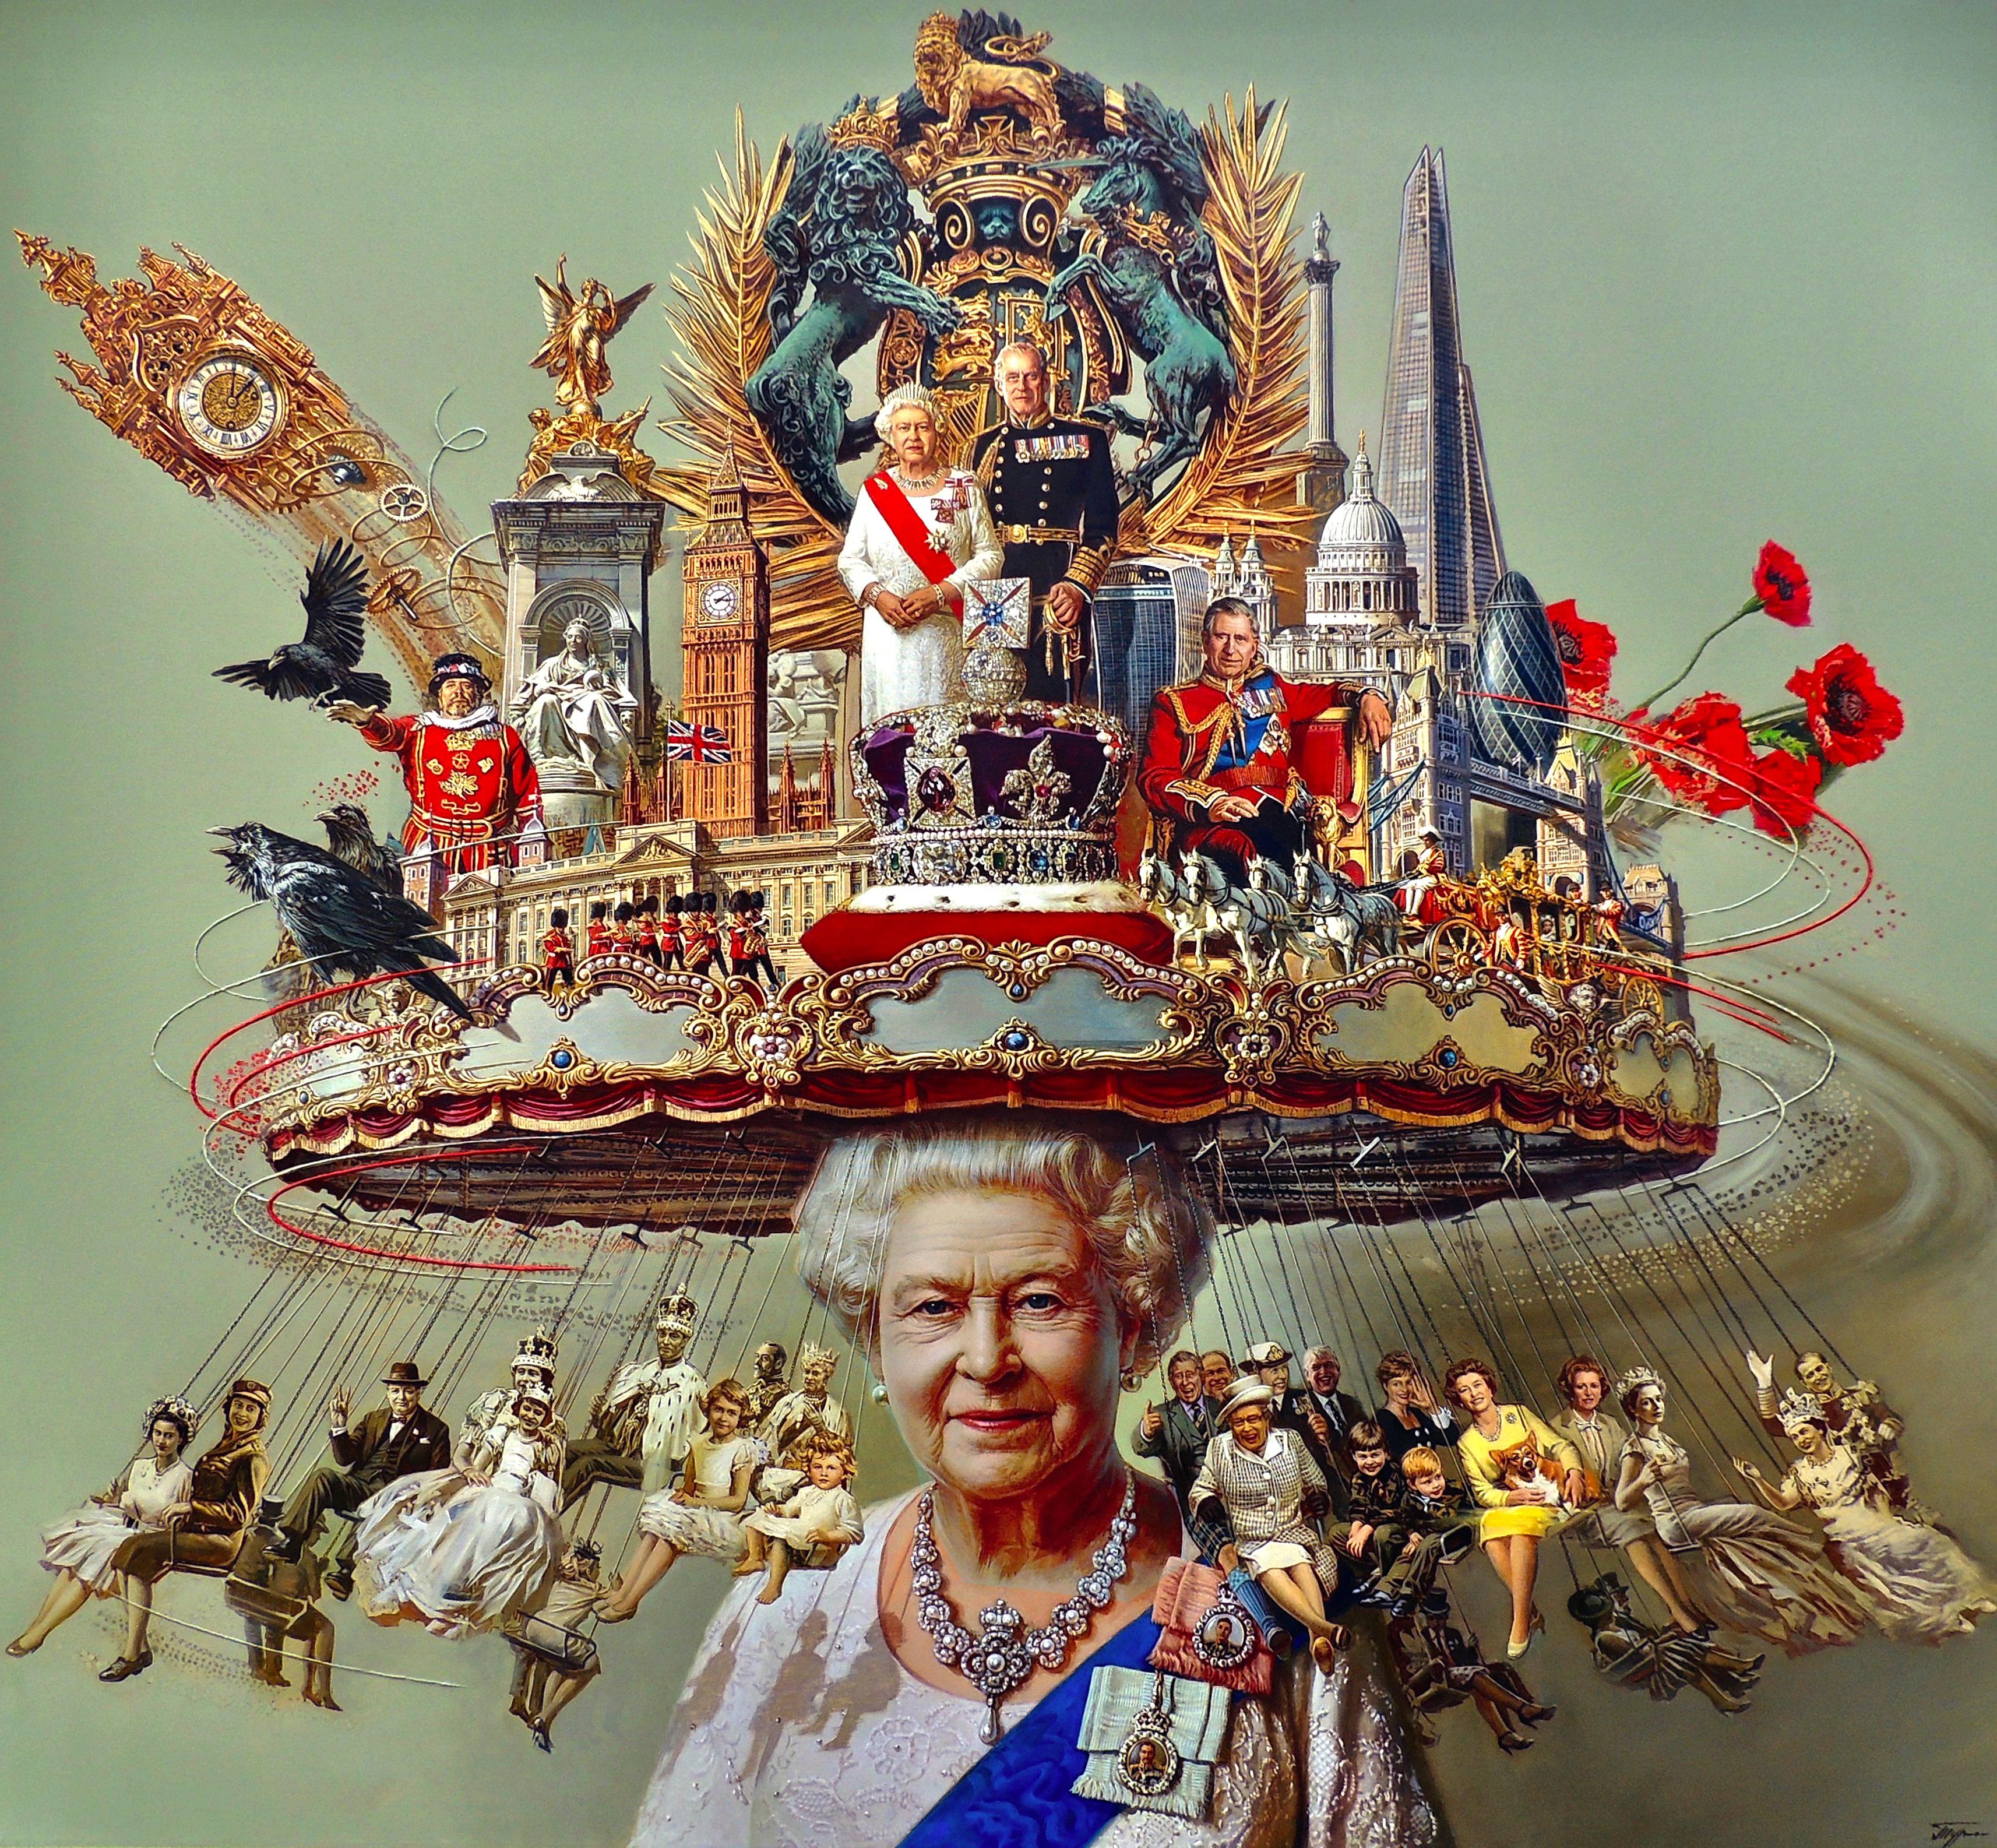 "Elizabeth's Hat" von Oleg Turchin ist ein figurativer Surrealismus original Öl auf Leinwand Gemälde messen 58x63 in. Dieses Gemälde zeigt das Leben der verstorbenen Königin Elisabeth. Die Königin ist wunderschön mit ihrer Diamantenkette und einem